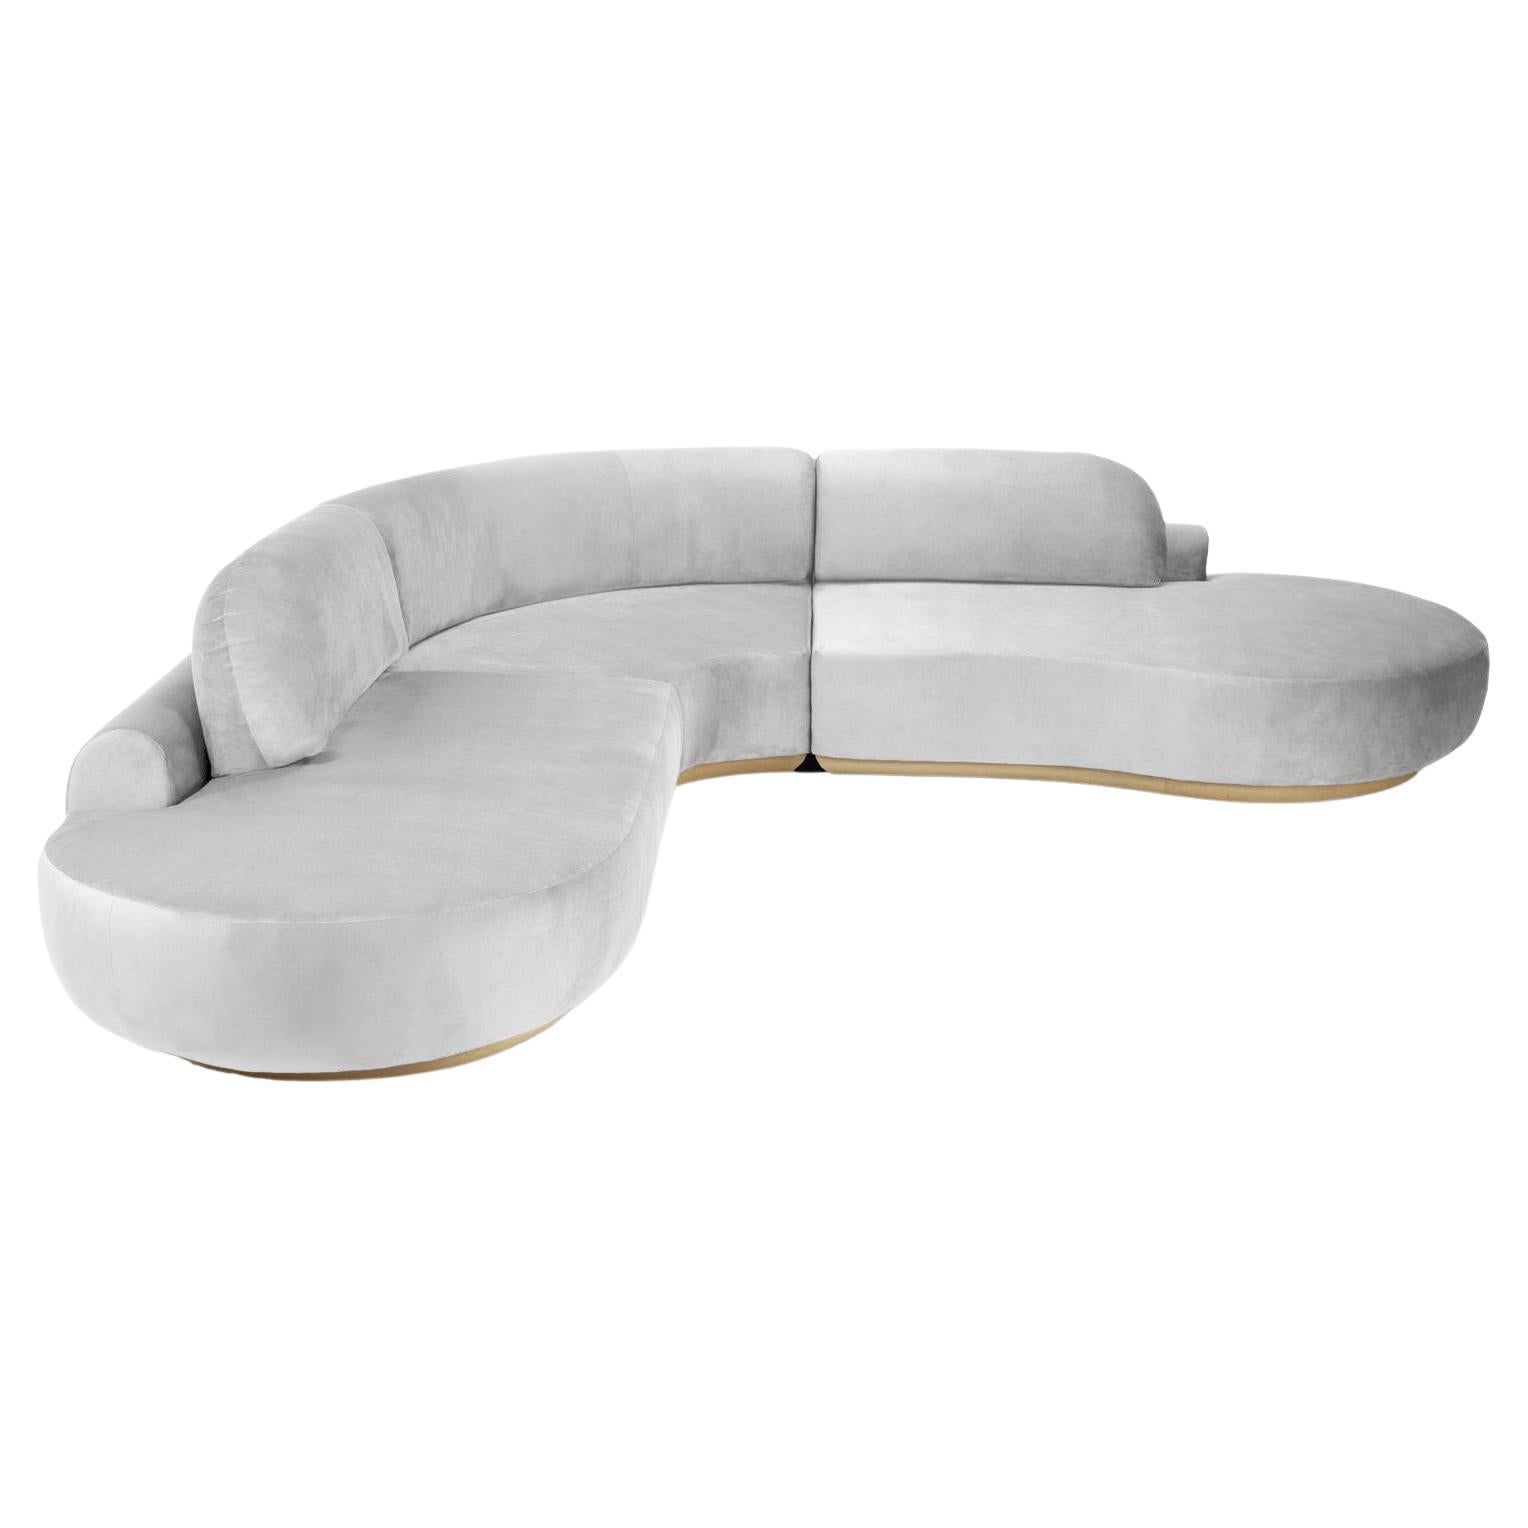 Canapé sectionnel à courbes nues, 3 pièces en chêne naturel et aluminium